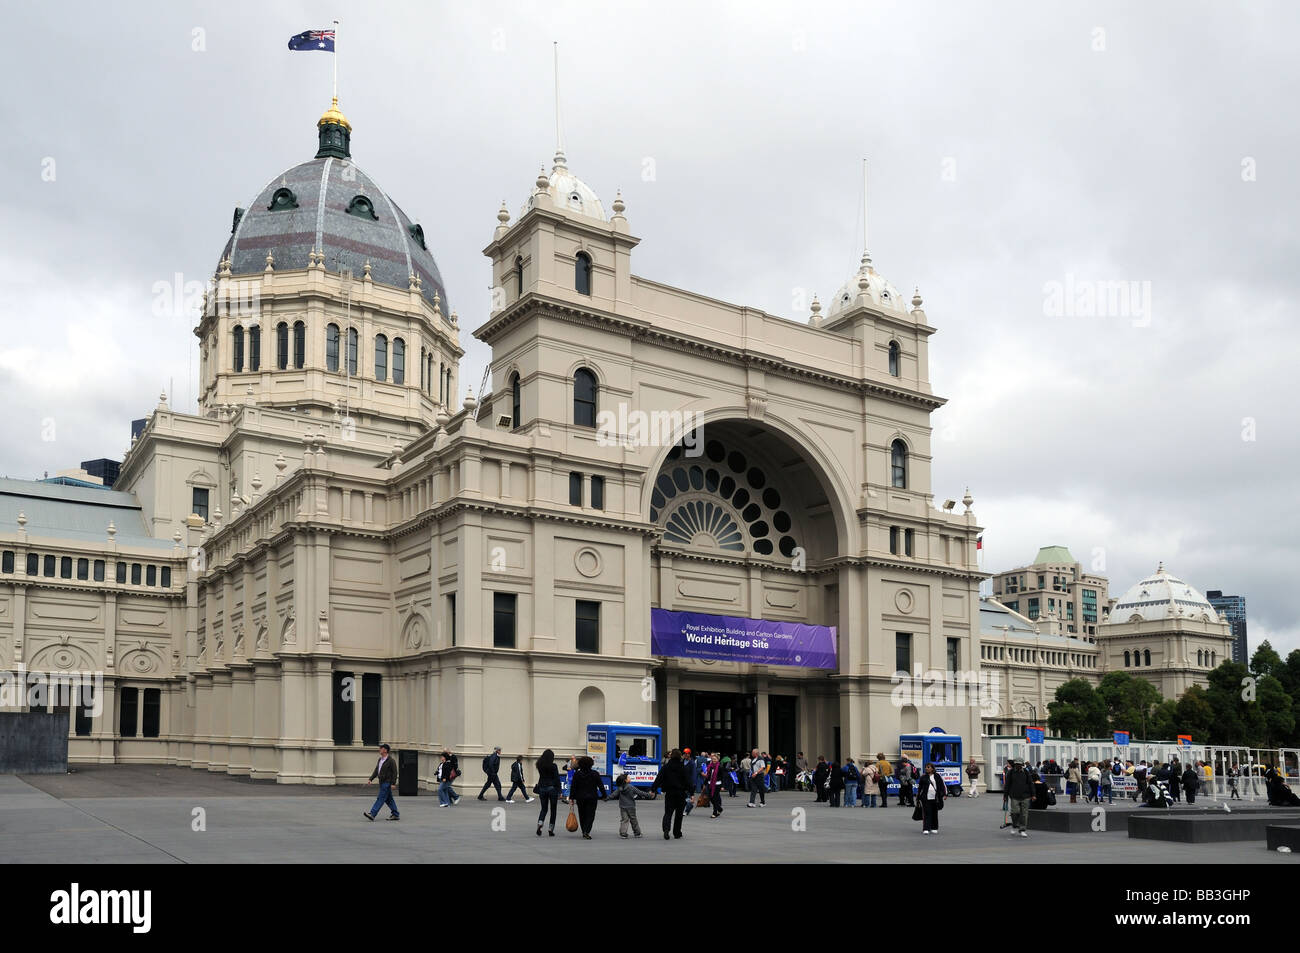 Royal Exhibition Building Melbourne Australie site du patrimoine mondial de l'un bâtiment du 19ème siècle de style colonial victorien Banque D'Images